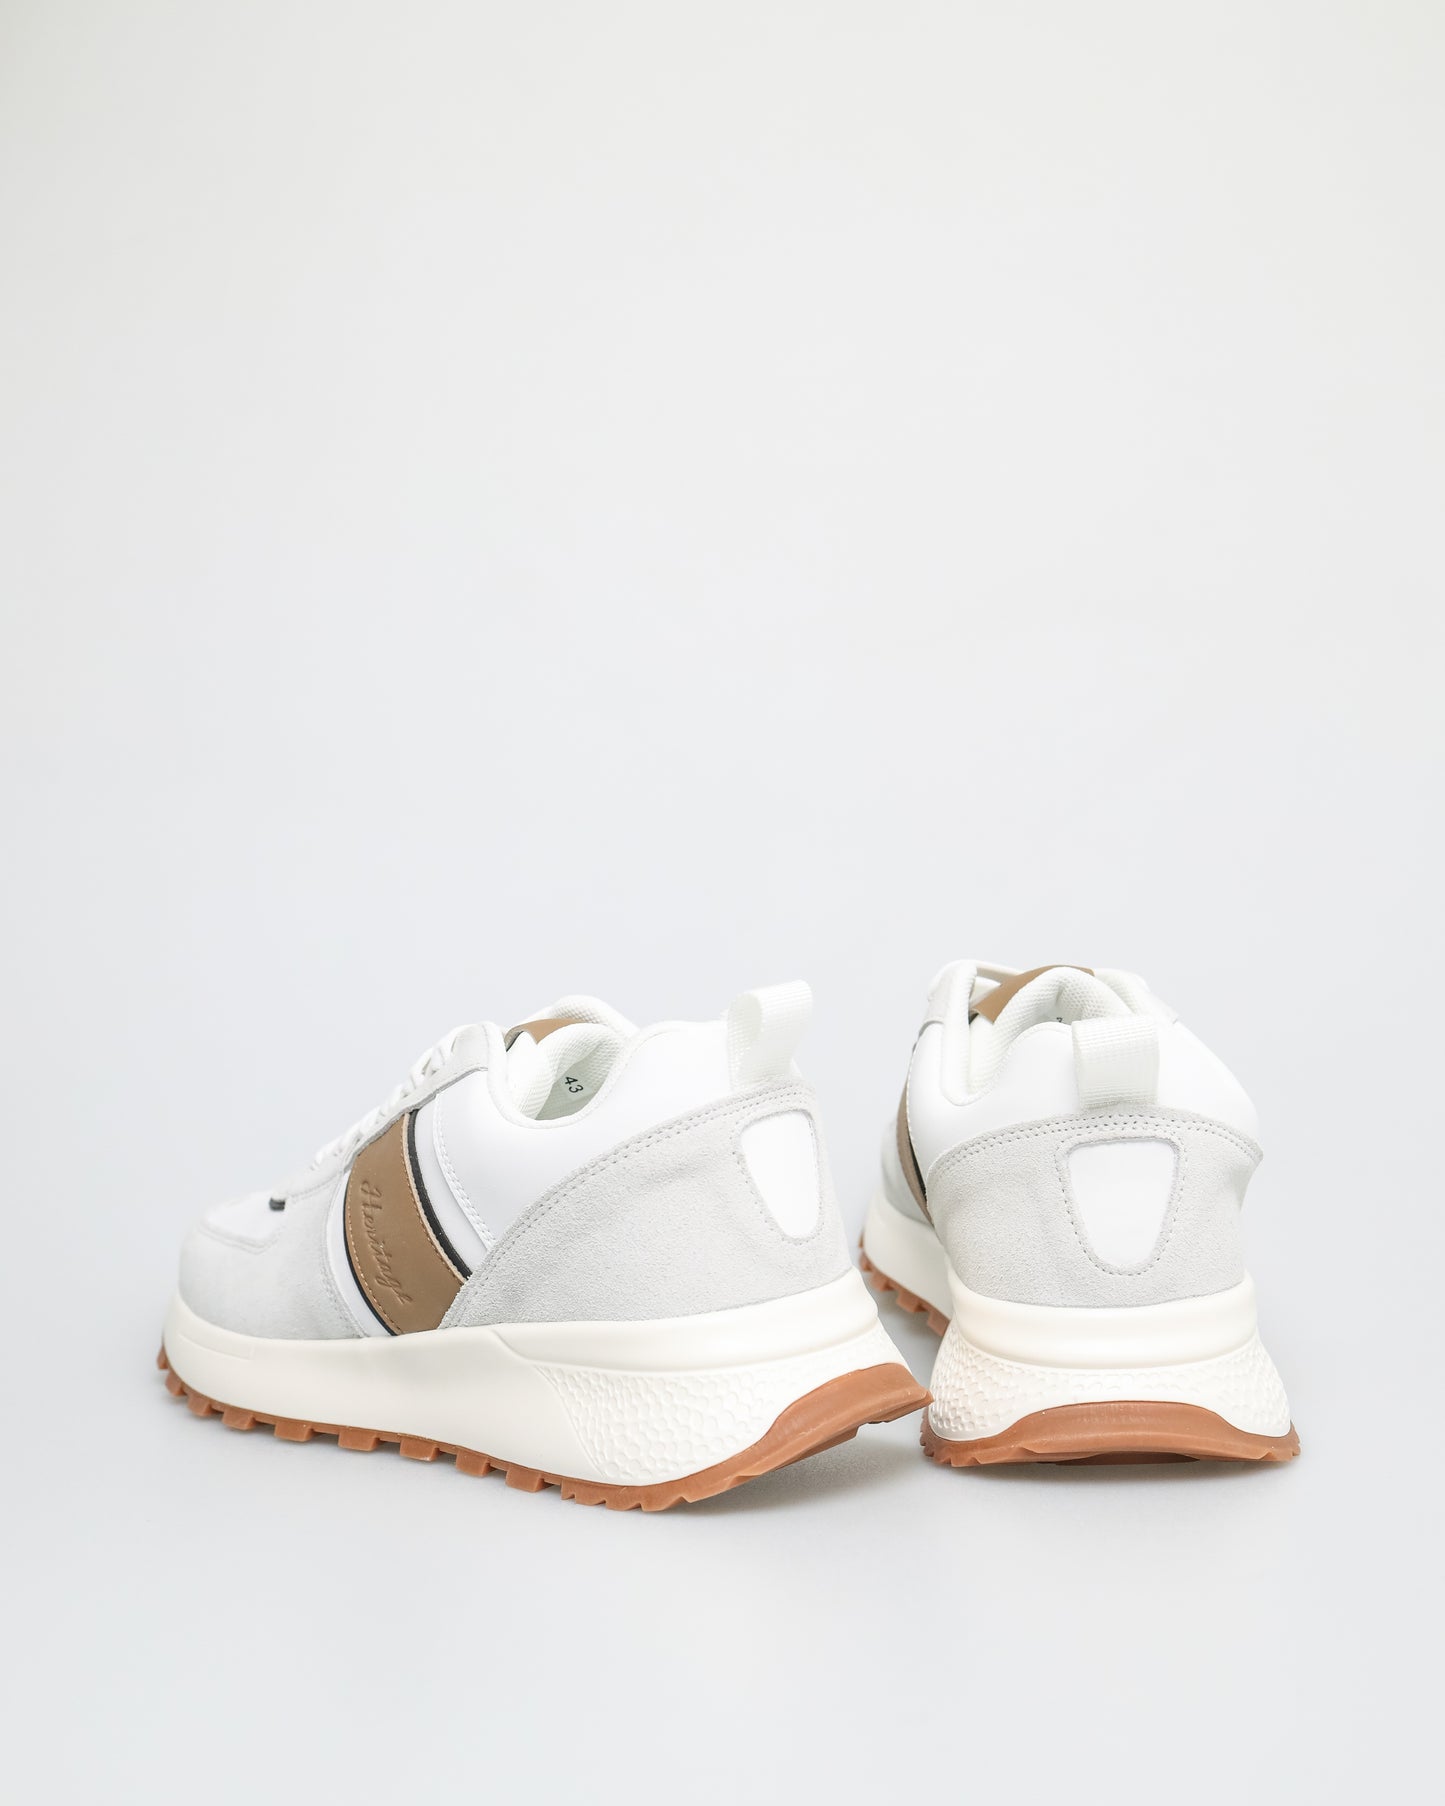 Tomaz TY021 Men's Sneakers (White/Khaki)